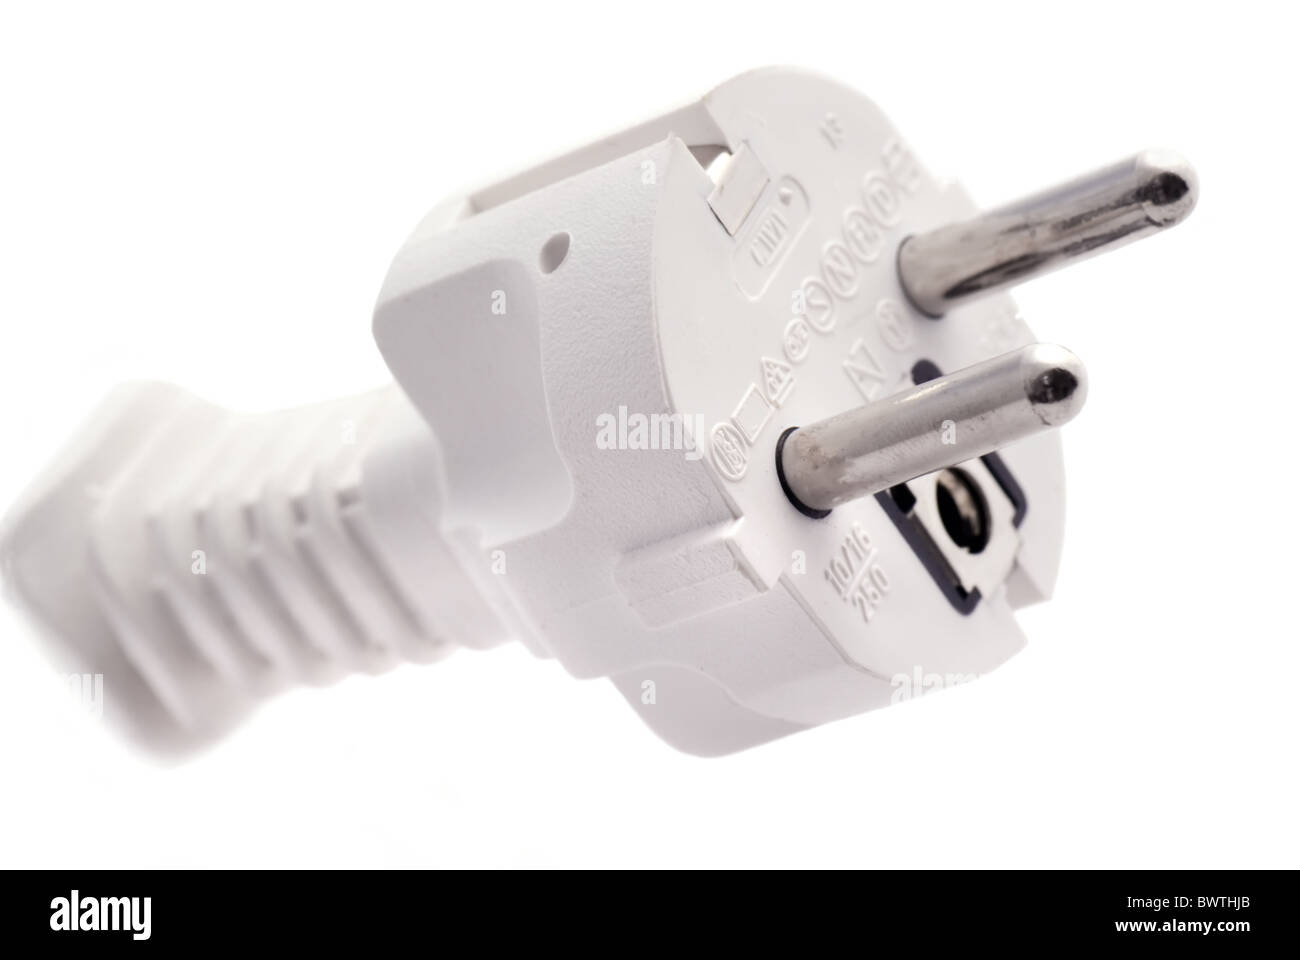 White Central European power plug as closeup on white background Stock Photo